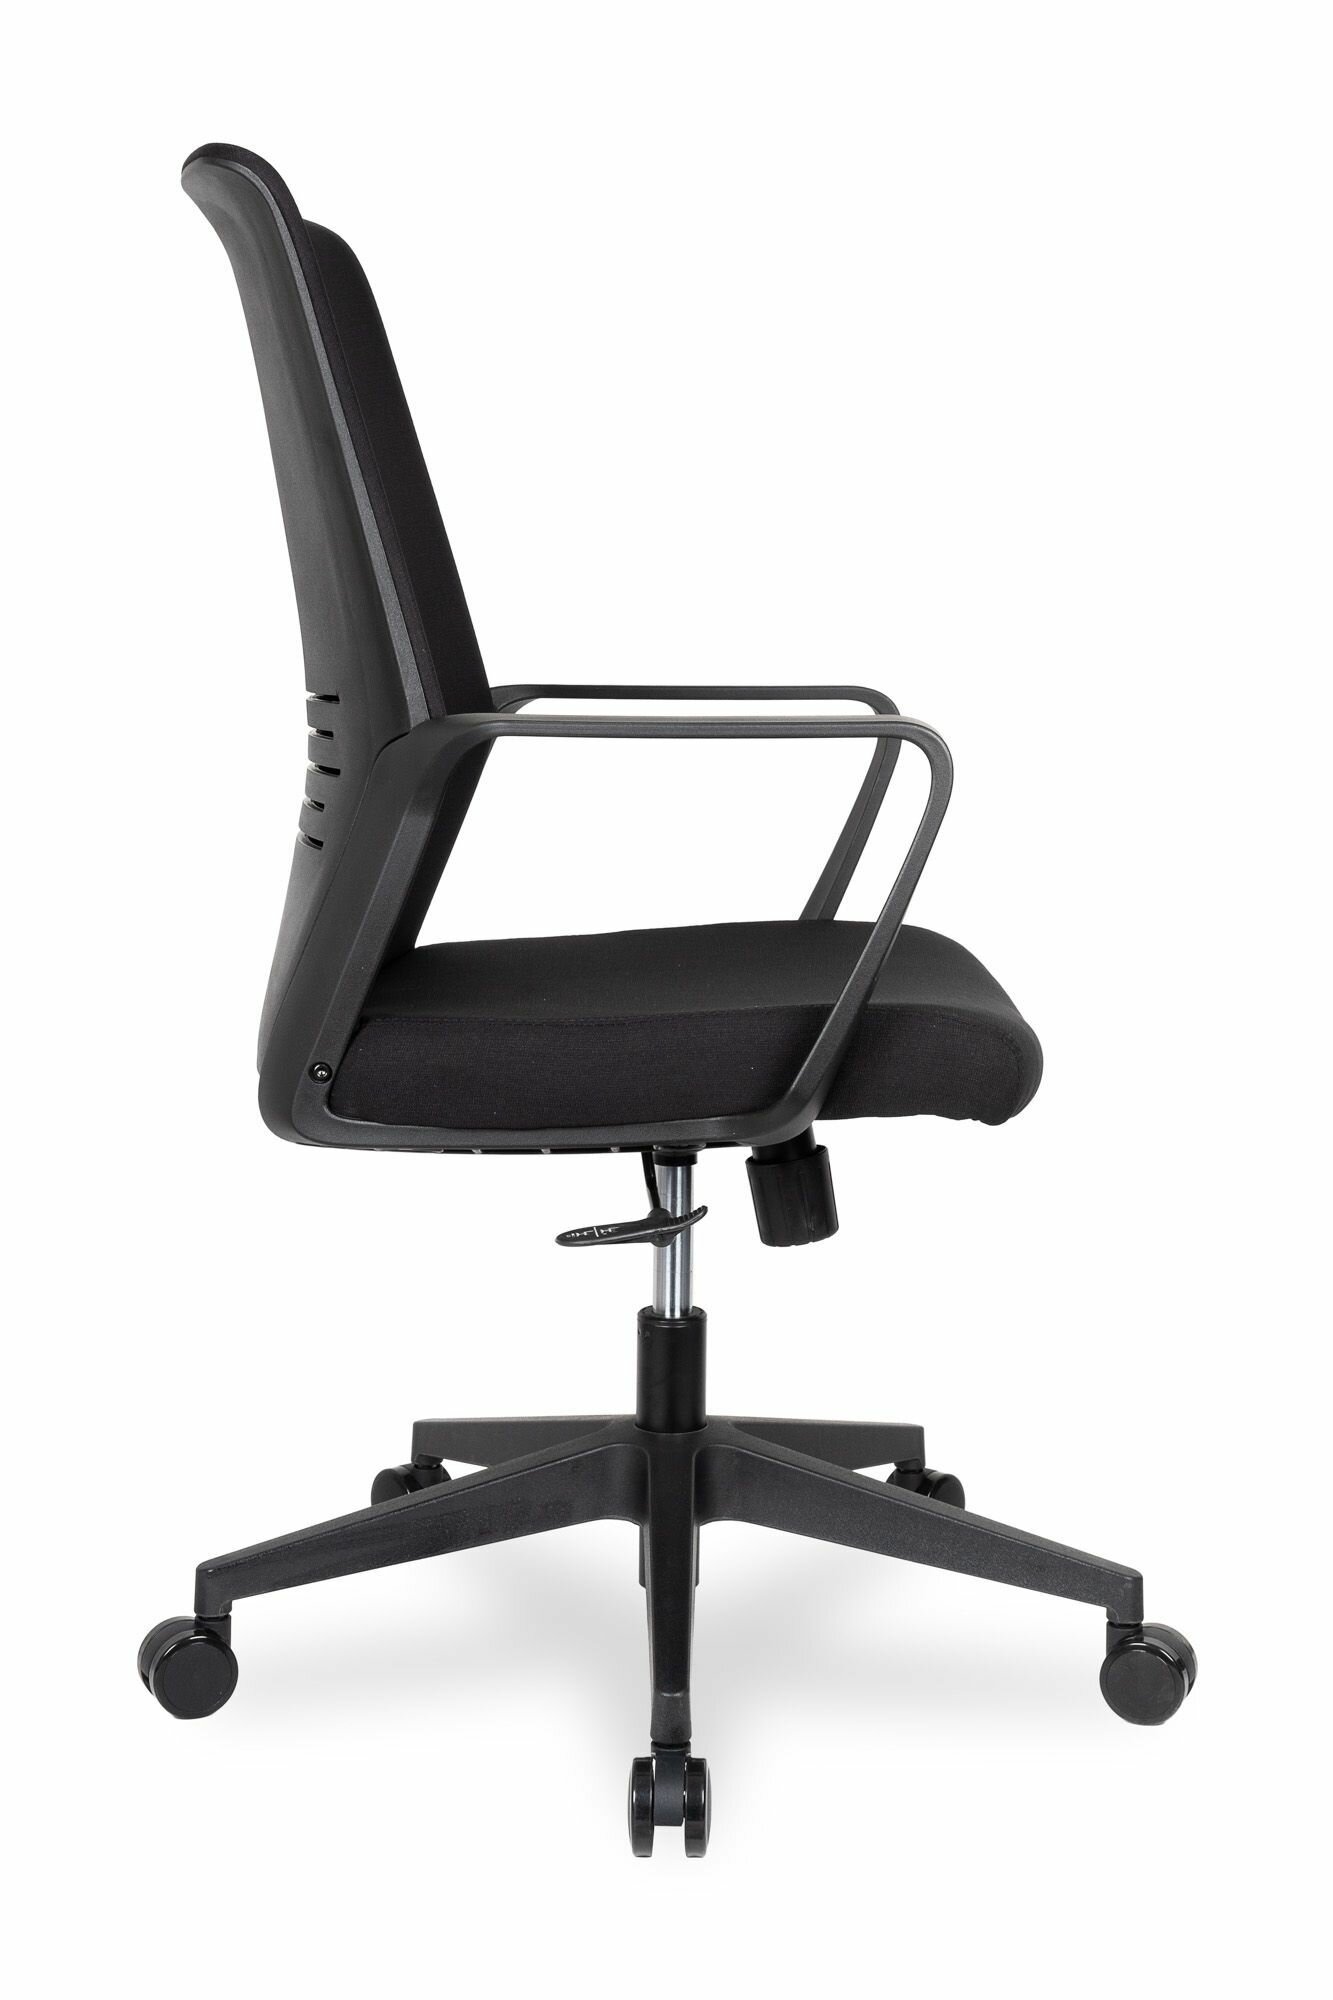 Компьютерное кресло College CLG-427 офисное, обивка: искусственная кожа, цвет: черный 2 - фото №11